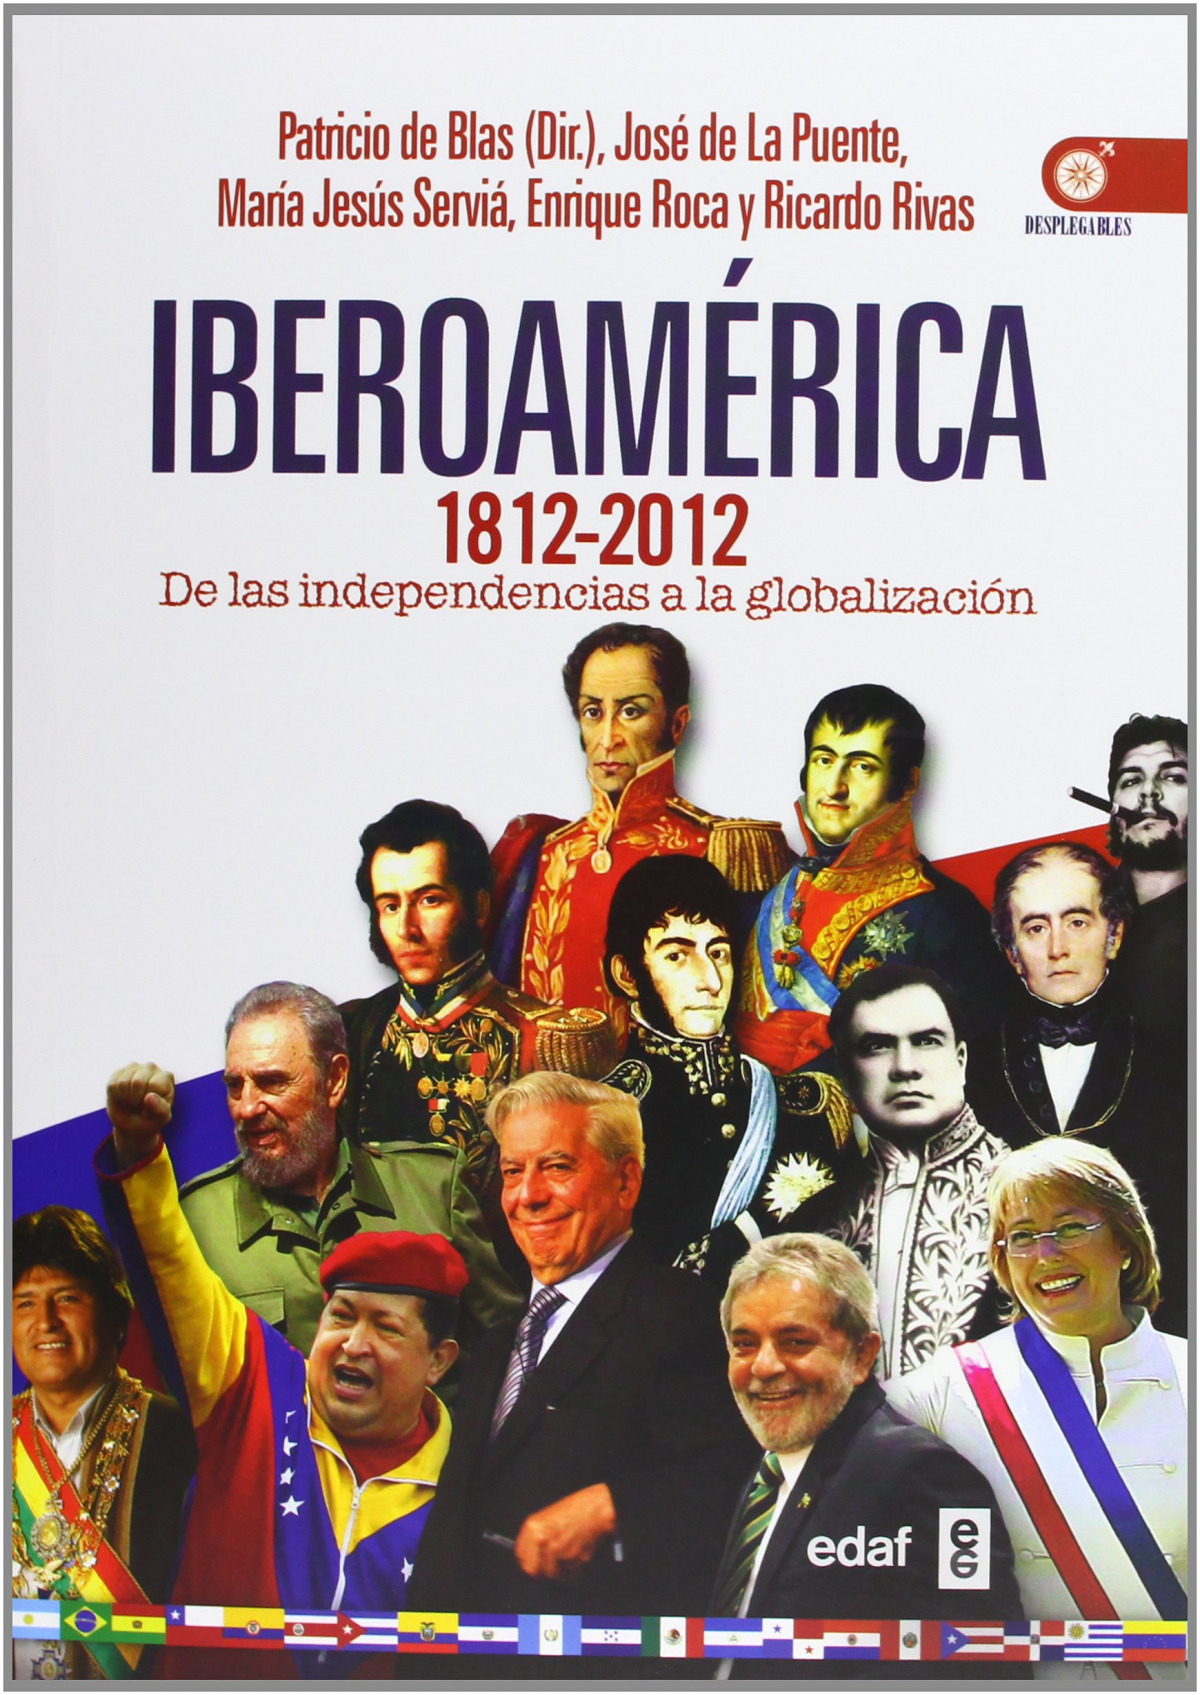 Iberoamerica 1812-2012 - De Blas, Patricio/De la Puente, Jose/Rivas, Ricard